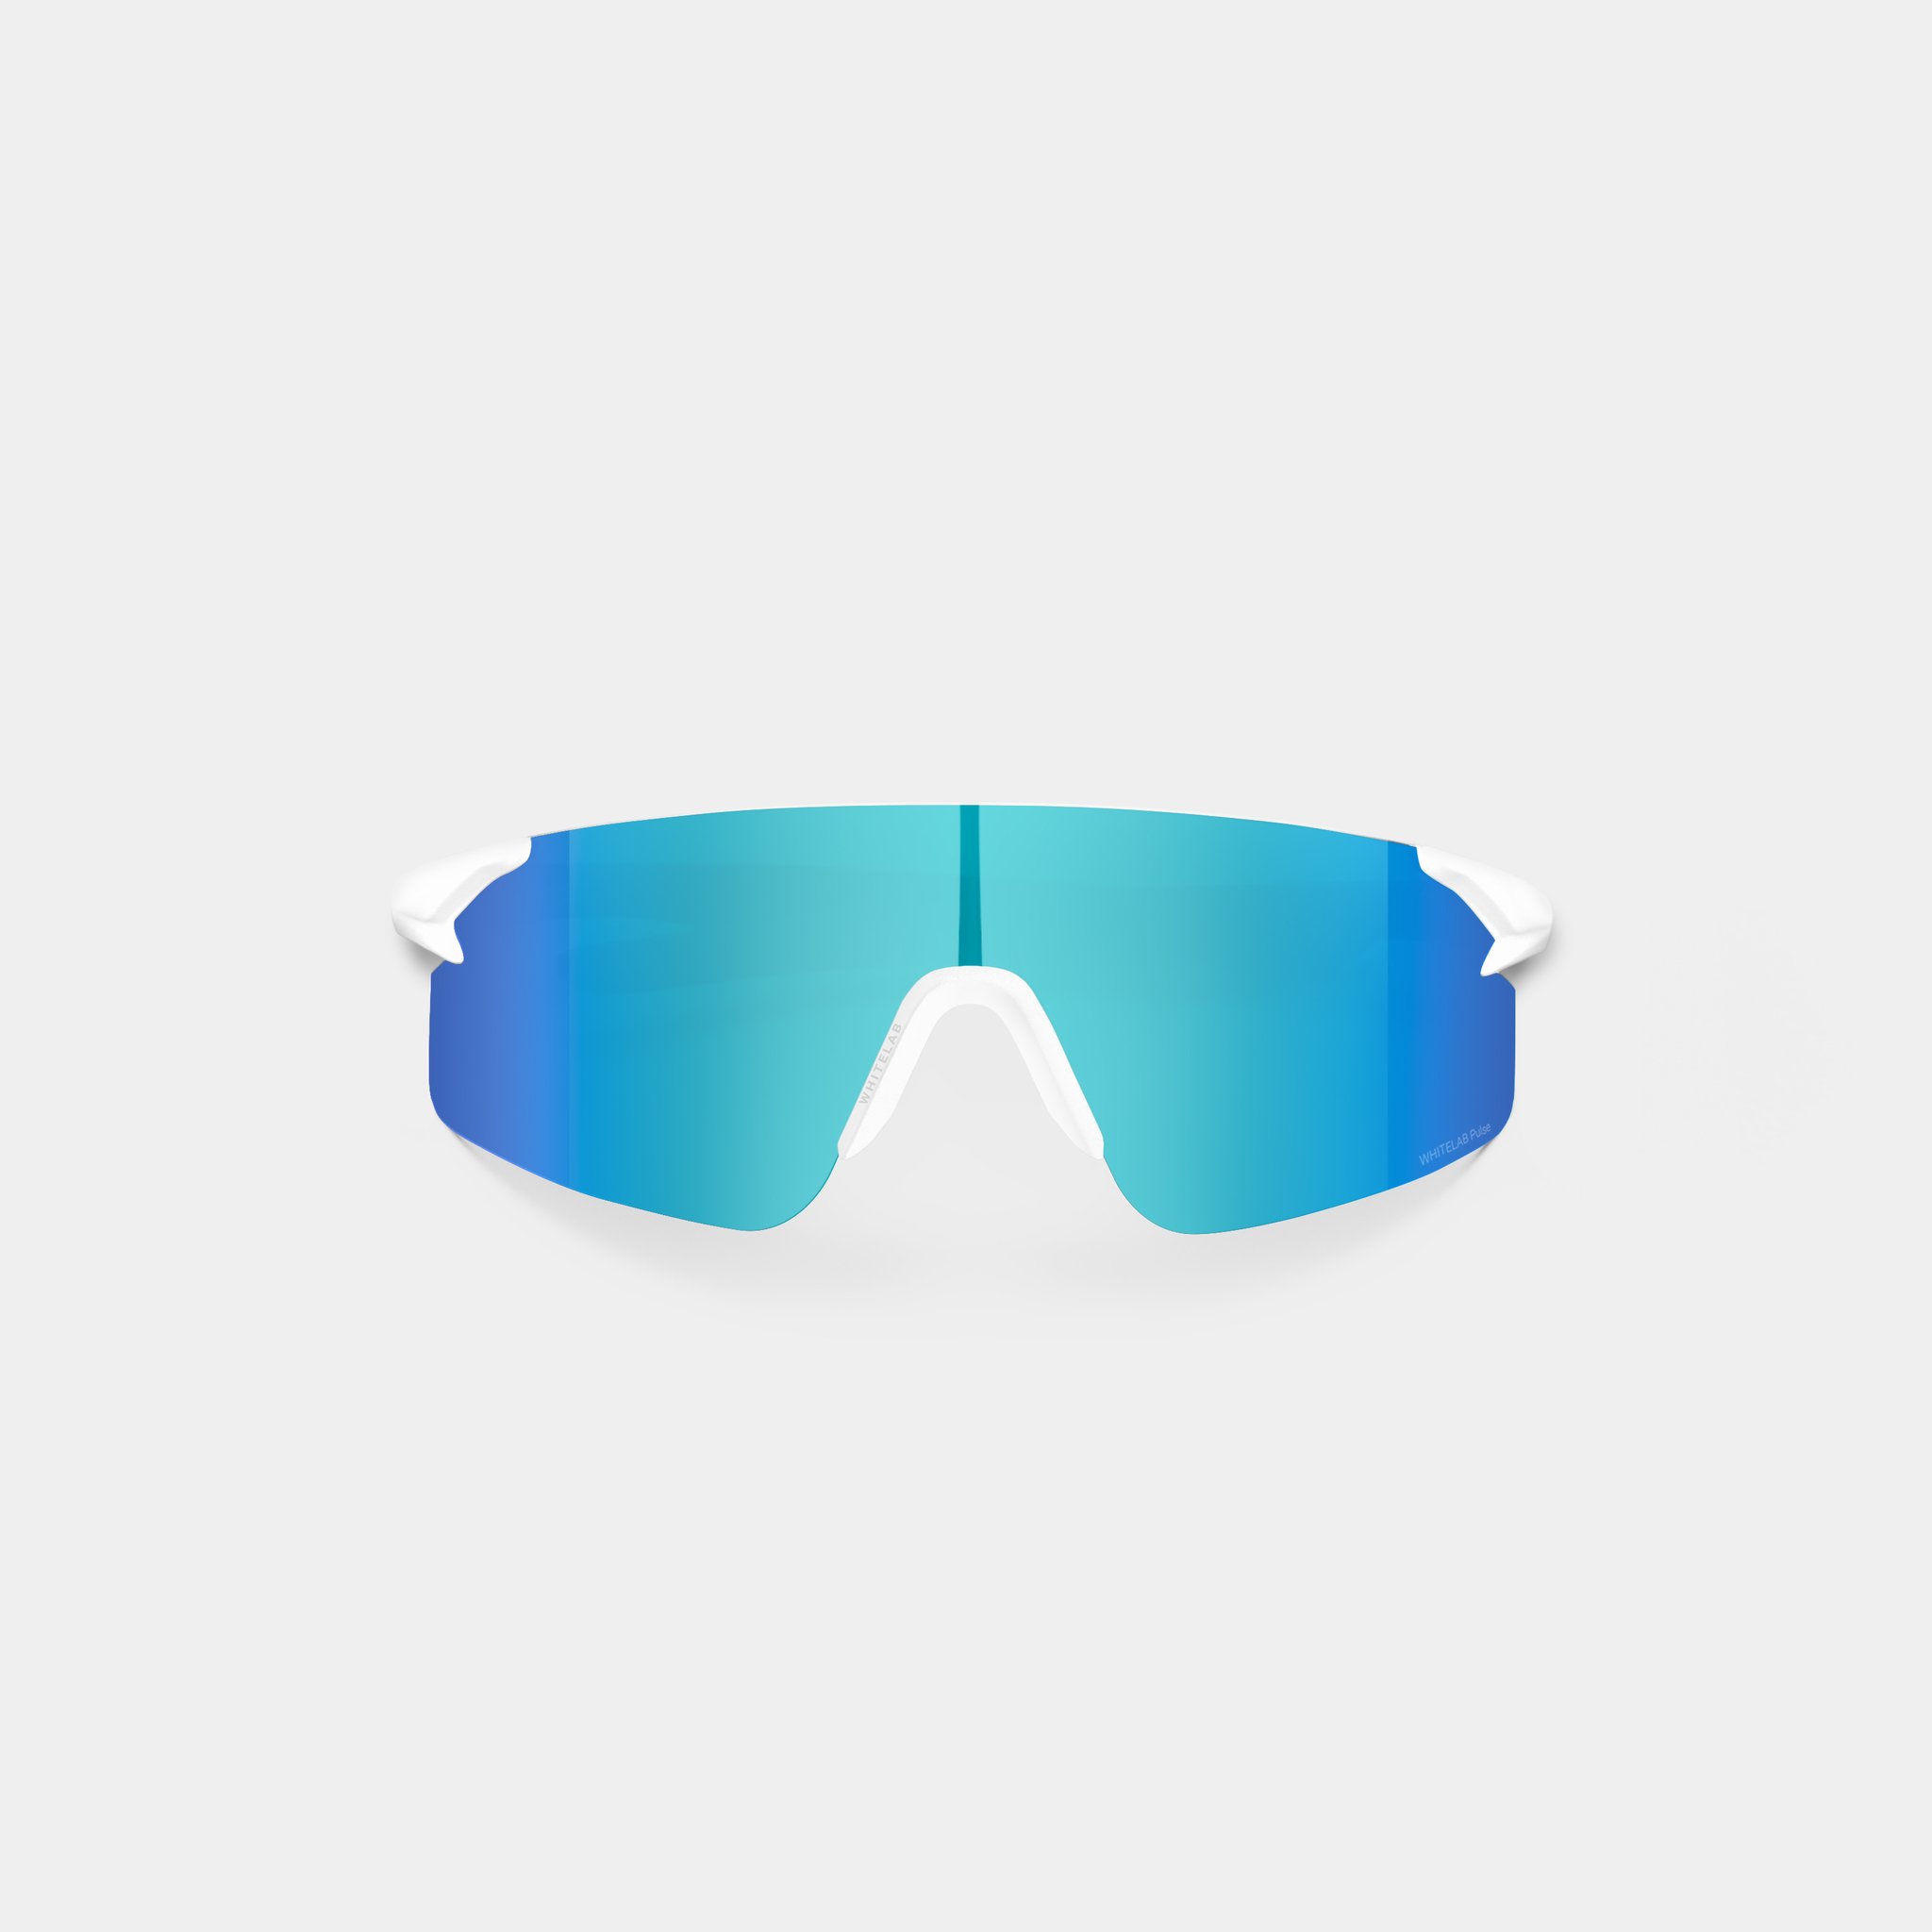  синие солнцезащитные очки White Lab Visor Visor white/ultramarin - цена, описание, фото 1